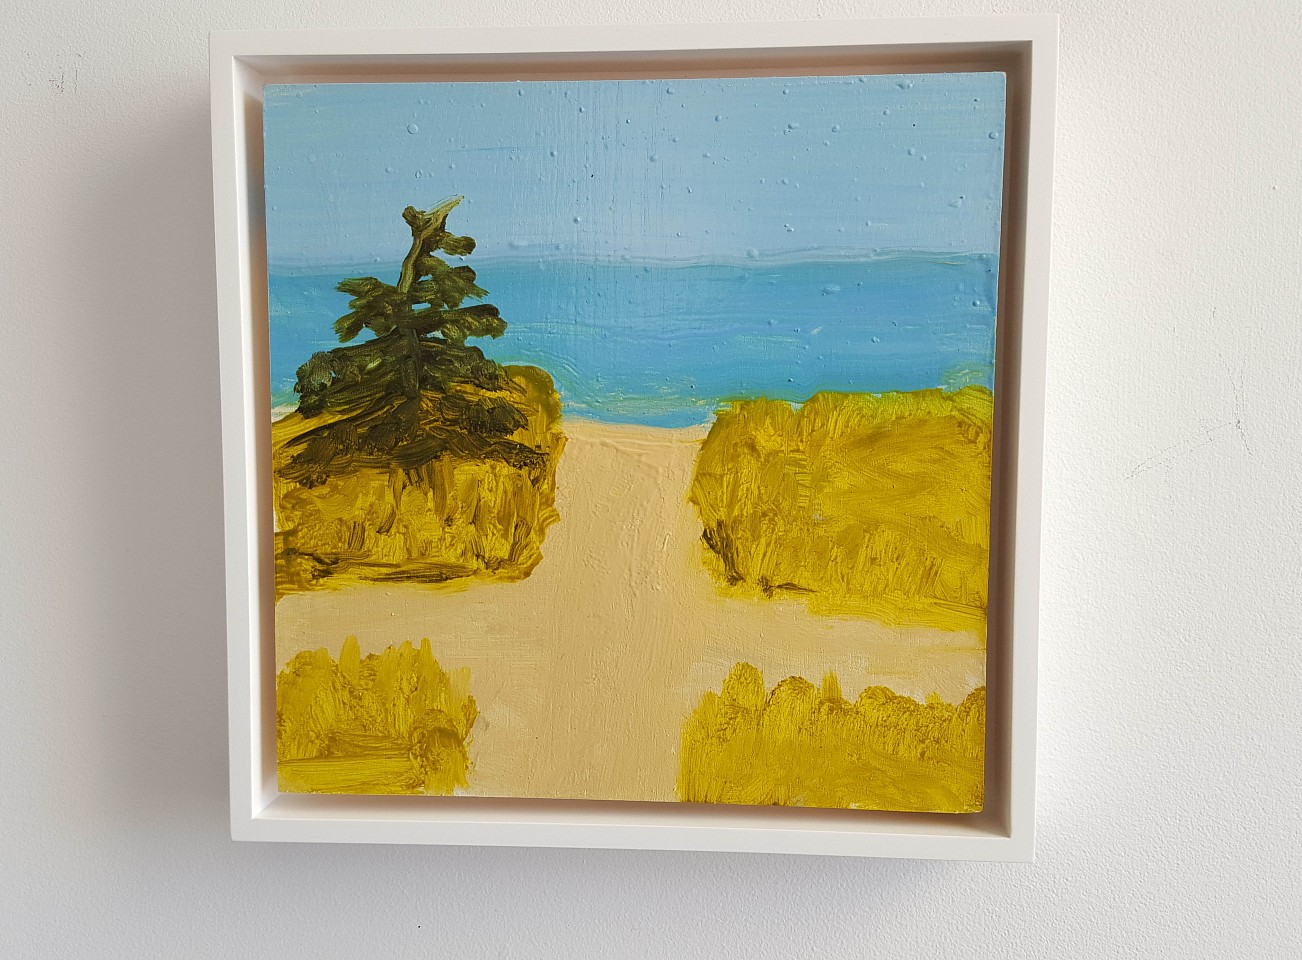 Kathryn Lynch
Beach, 2015
lyn611
oil on panel, 8 x 8 inches